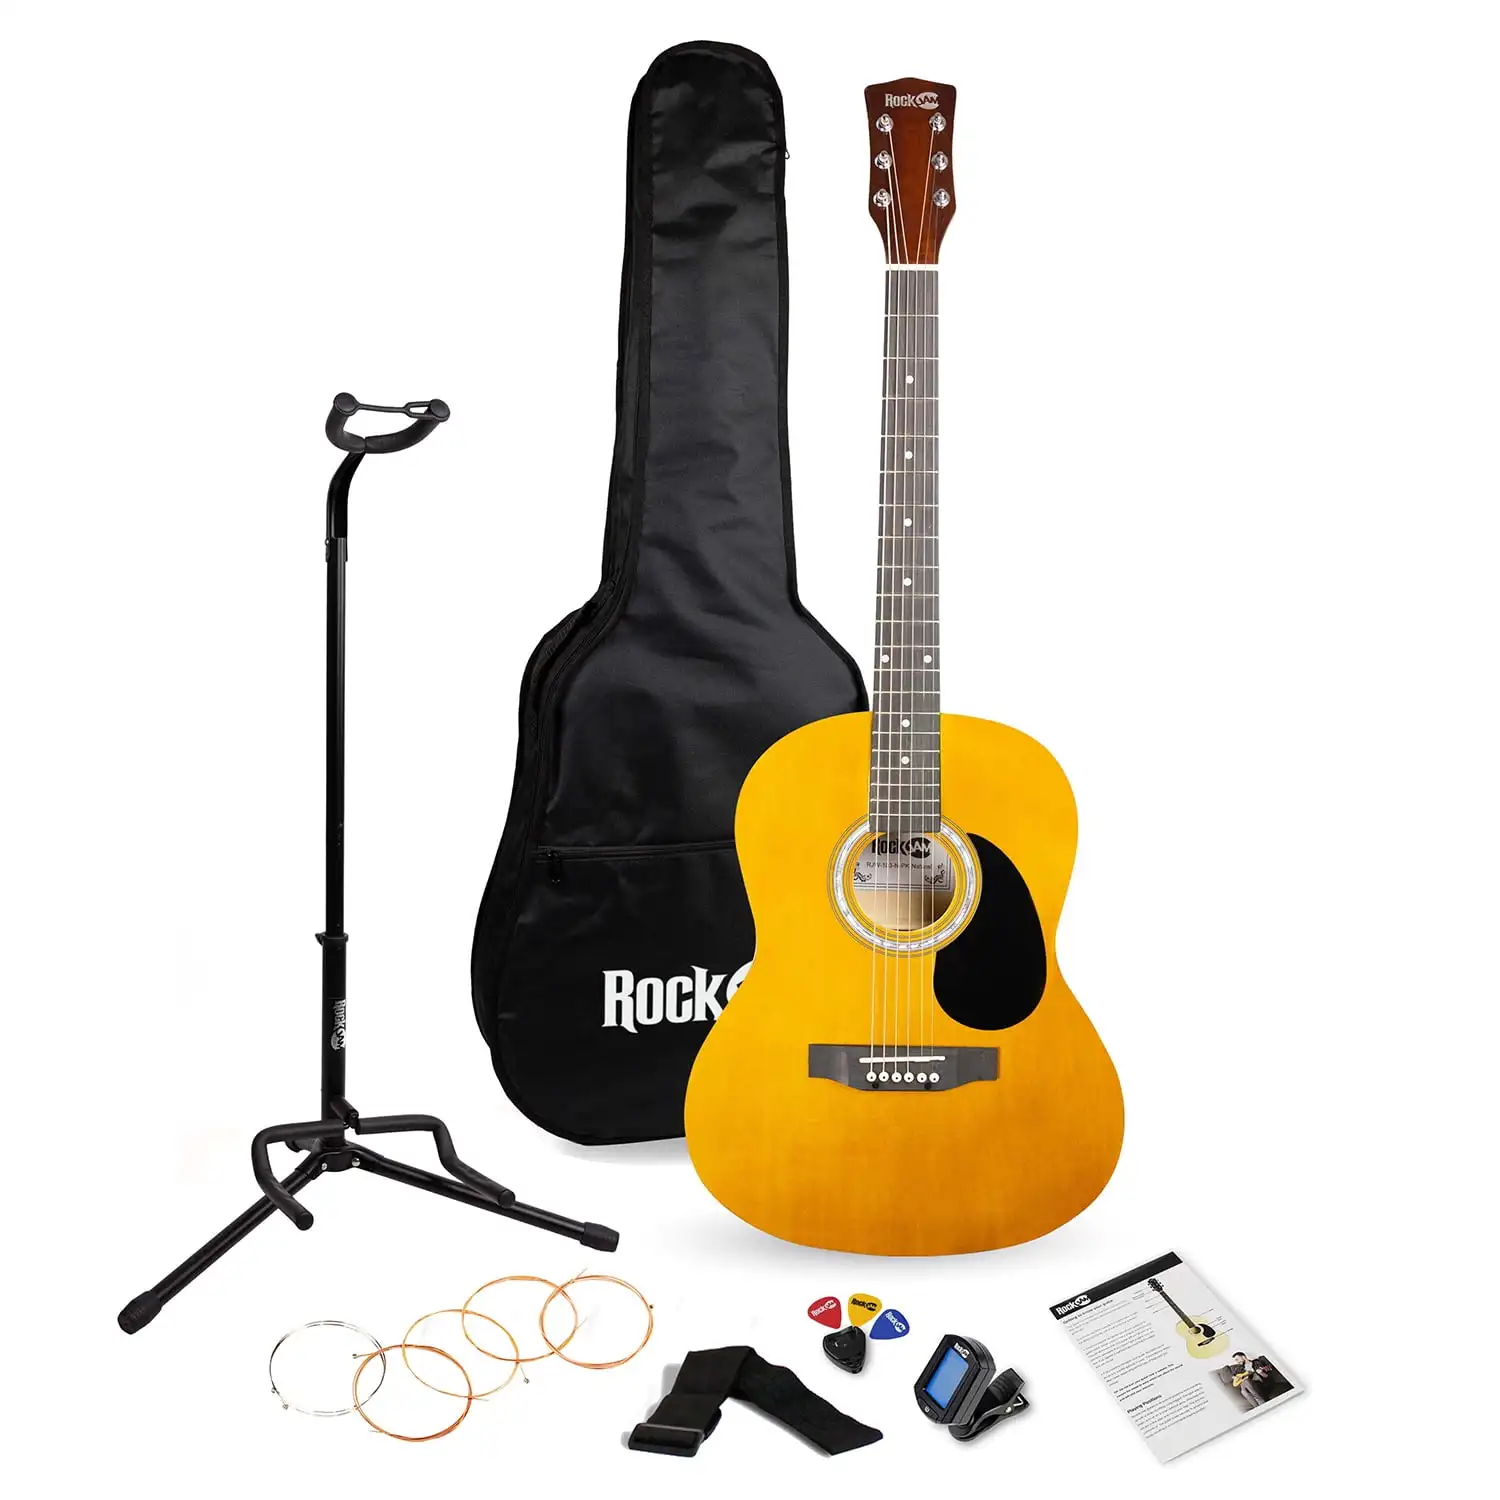 

Натуральный полноразмерный фотоальбом с гитарным тюнером, сумкой для гитары, подставкой для гитары и уроками, бесплатная доставка